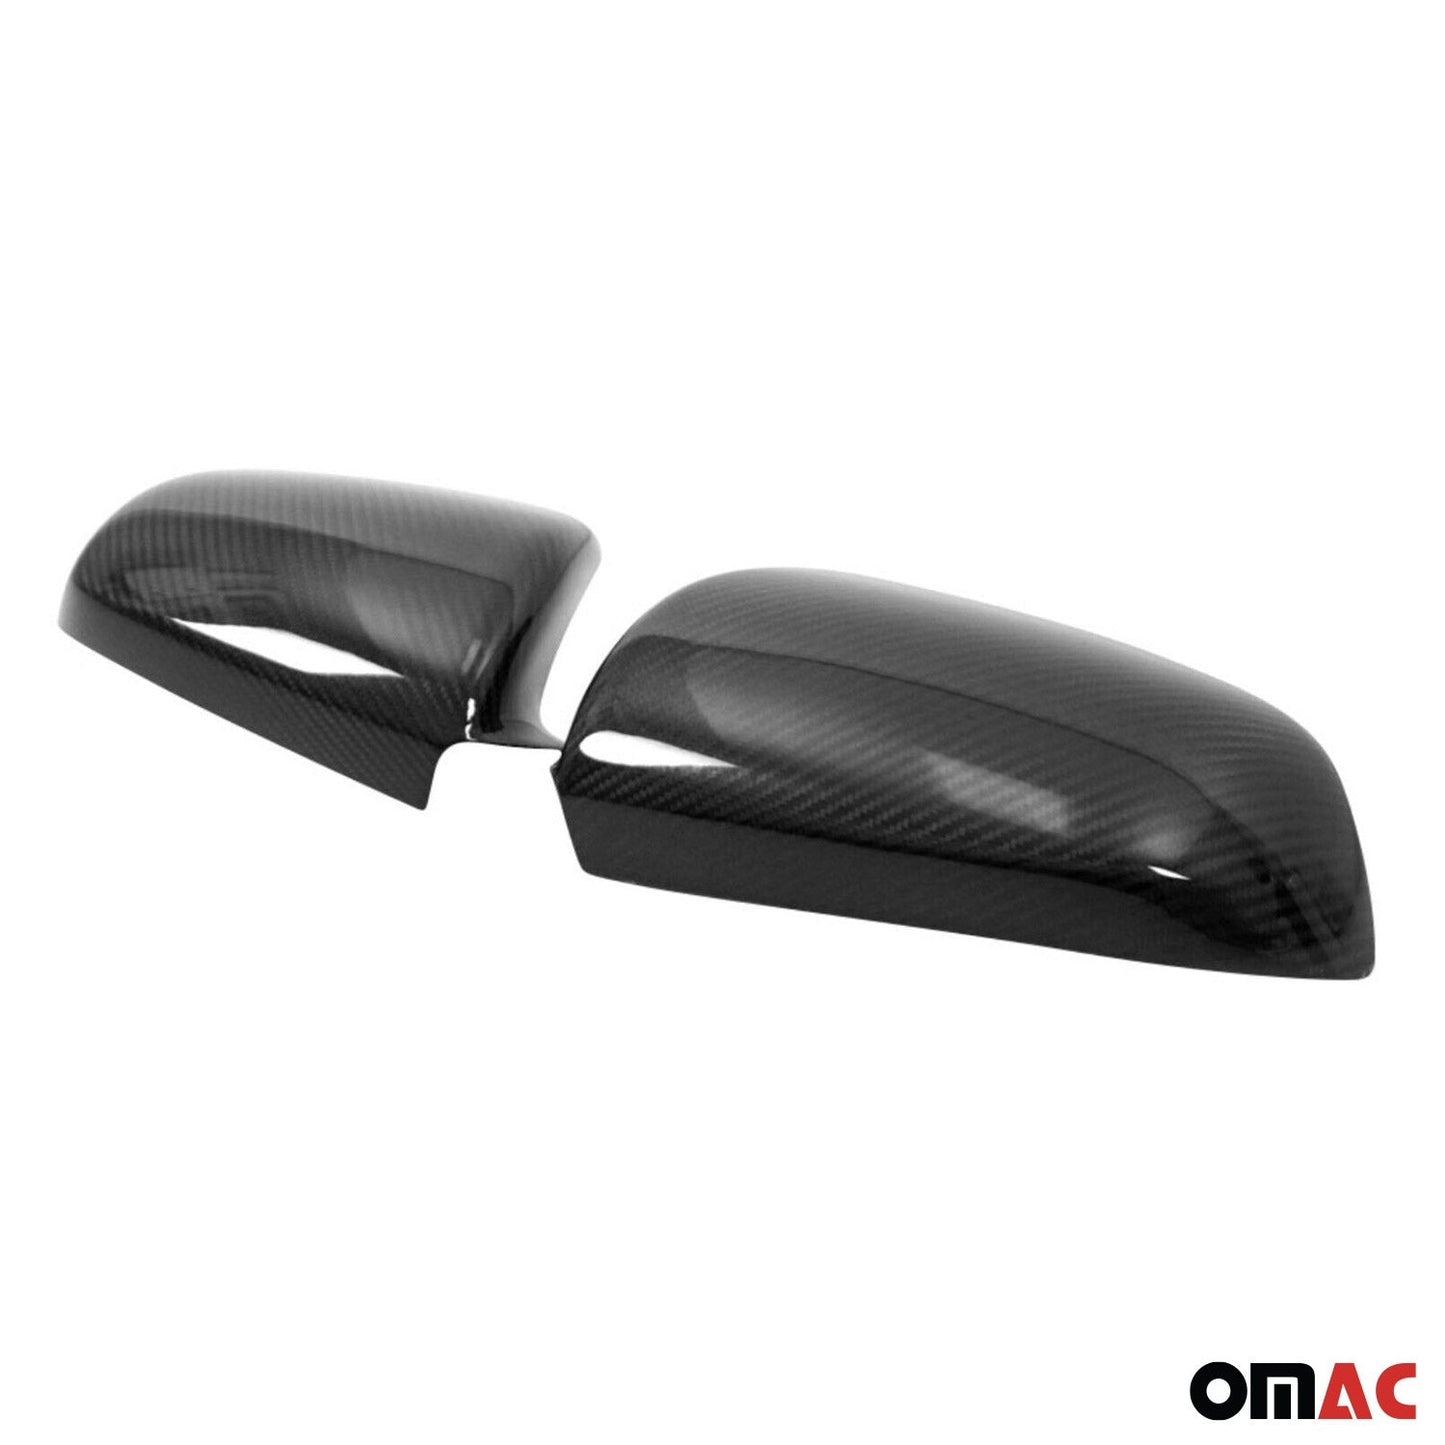 OMAC Side Mirror Cover Caps Fits Audi A4 2001-2005 Sedan Carbon Fiber Black 2 Pcs 1118111C